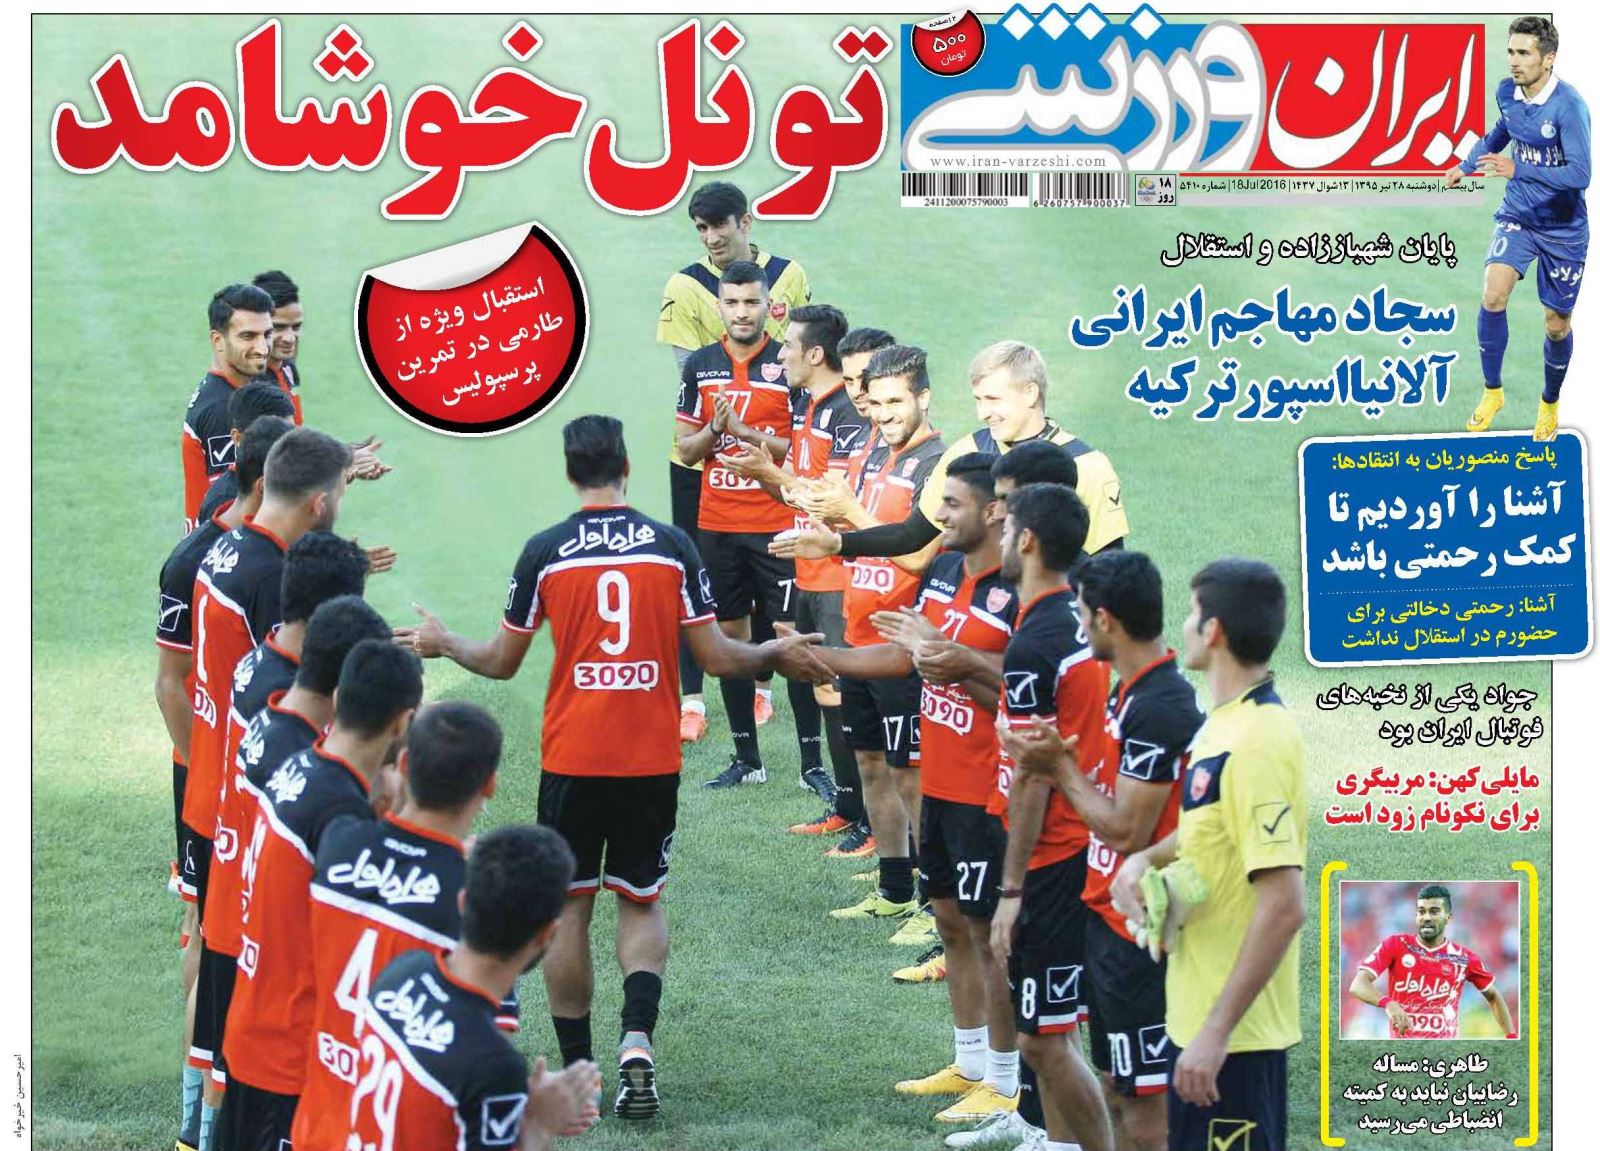 جلد ایران ورزشی/دوشنبه 28 تیر 95